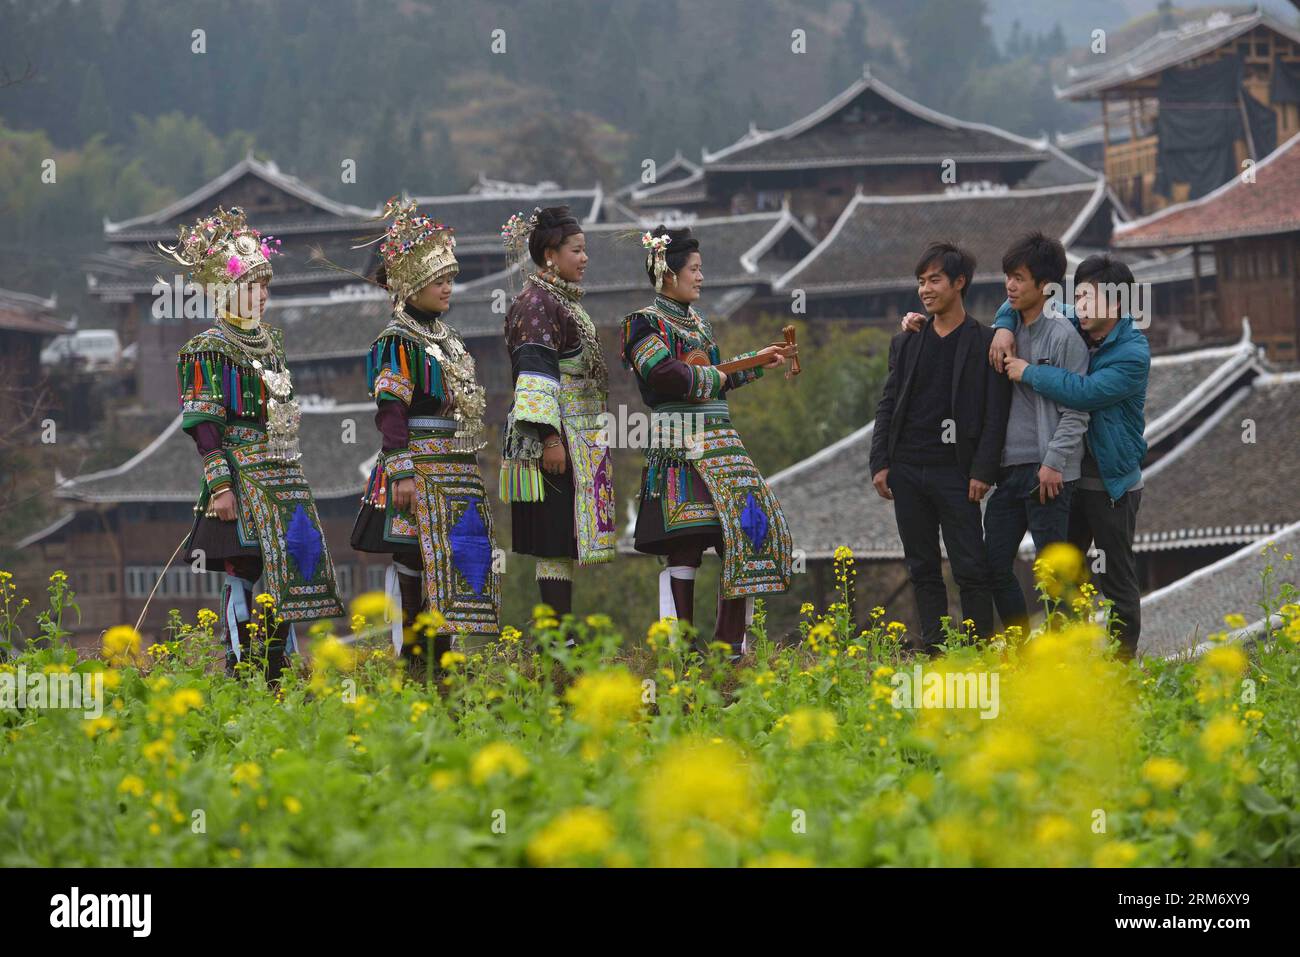 RONGJIANG - la gente del gruppo etnico Dong esegue canti antifonali nel villaggio di Baoli della contea di Rongjiang, nella provincia di Guizhou nella Cina sud-occidentale, 3 febbraio 2014. La gente del gruppo etnico Dong ha celebrato il Festival di primavera con canti e balli il lunedì. (Xinhua/Qin Gang) (zgp) CINA-GUIZHOU-DONG GRUPPO ETNICO-FESTIVAL PRIMAVERILE (CN) PUBLICATIONxNOTxINxCHN Rongjiang celebrità del gruppo etnico Dong eseguono CANTI antifonali nel villaggio Baoli della contea di Rongjiang nella provincia di Guizhou della Cina sud-occidentale 3 febbraio 2014 celebrità del gruppo etnico Dong hanno celebrato il Festival primaverile CANTANDO un Foto Stock